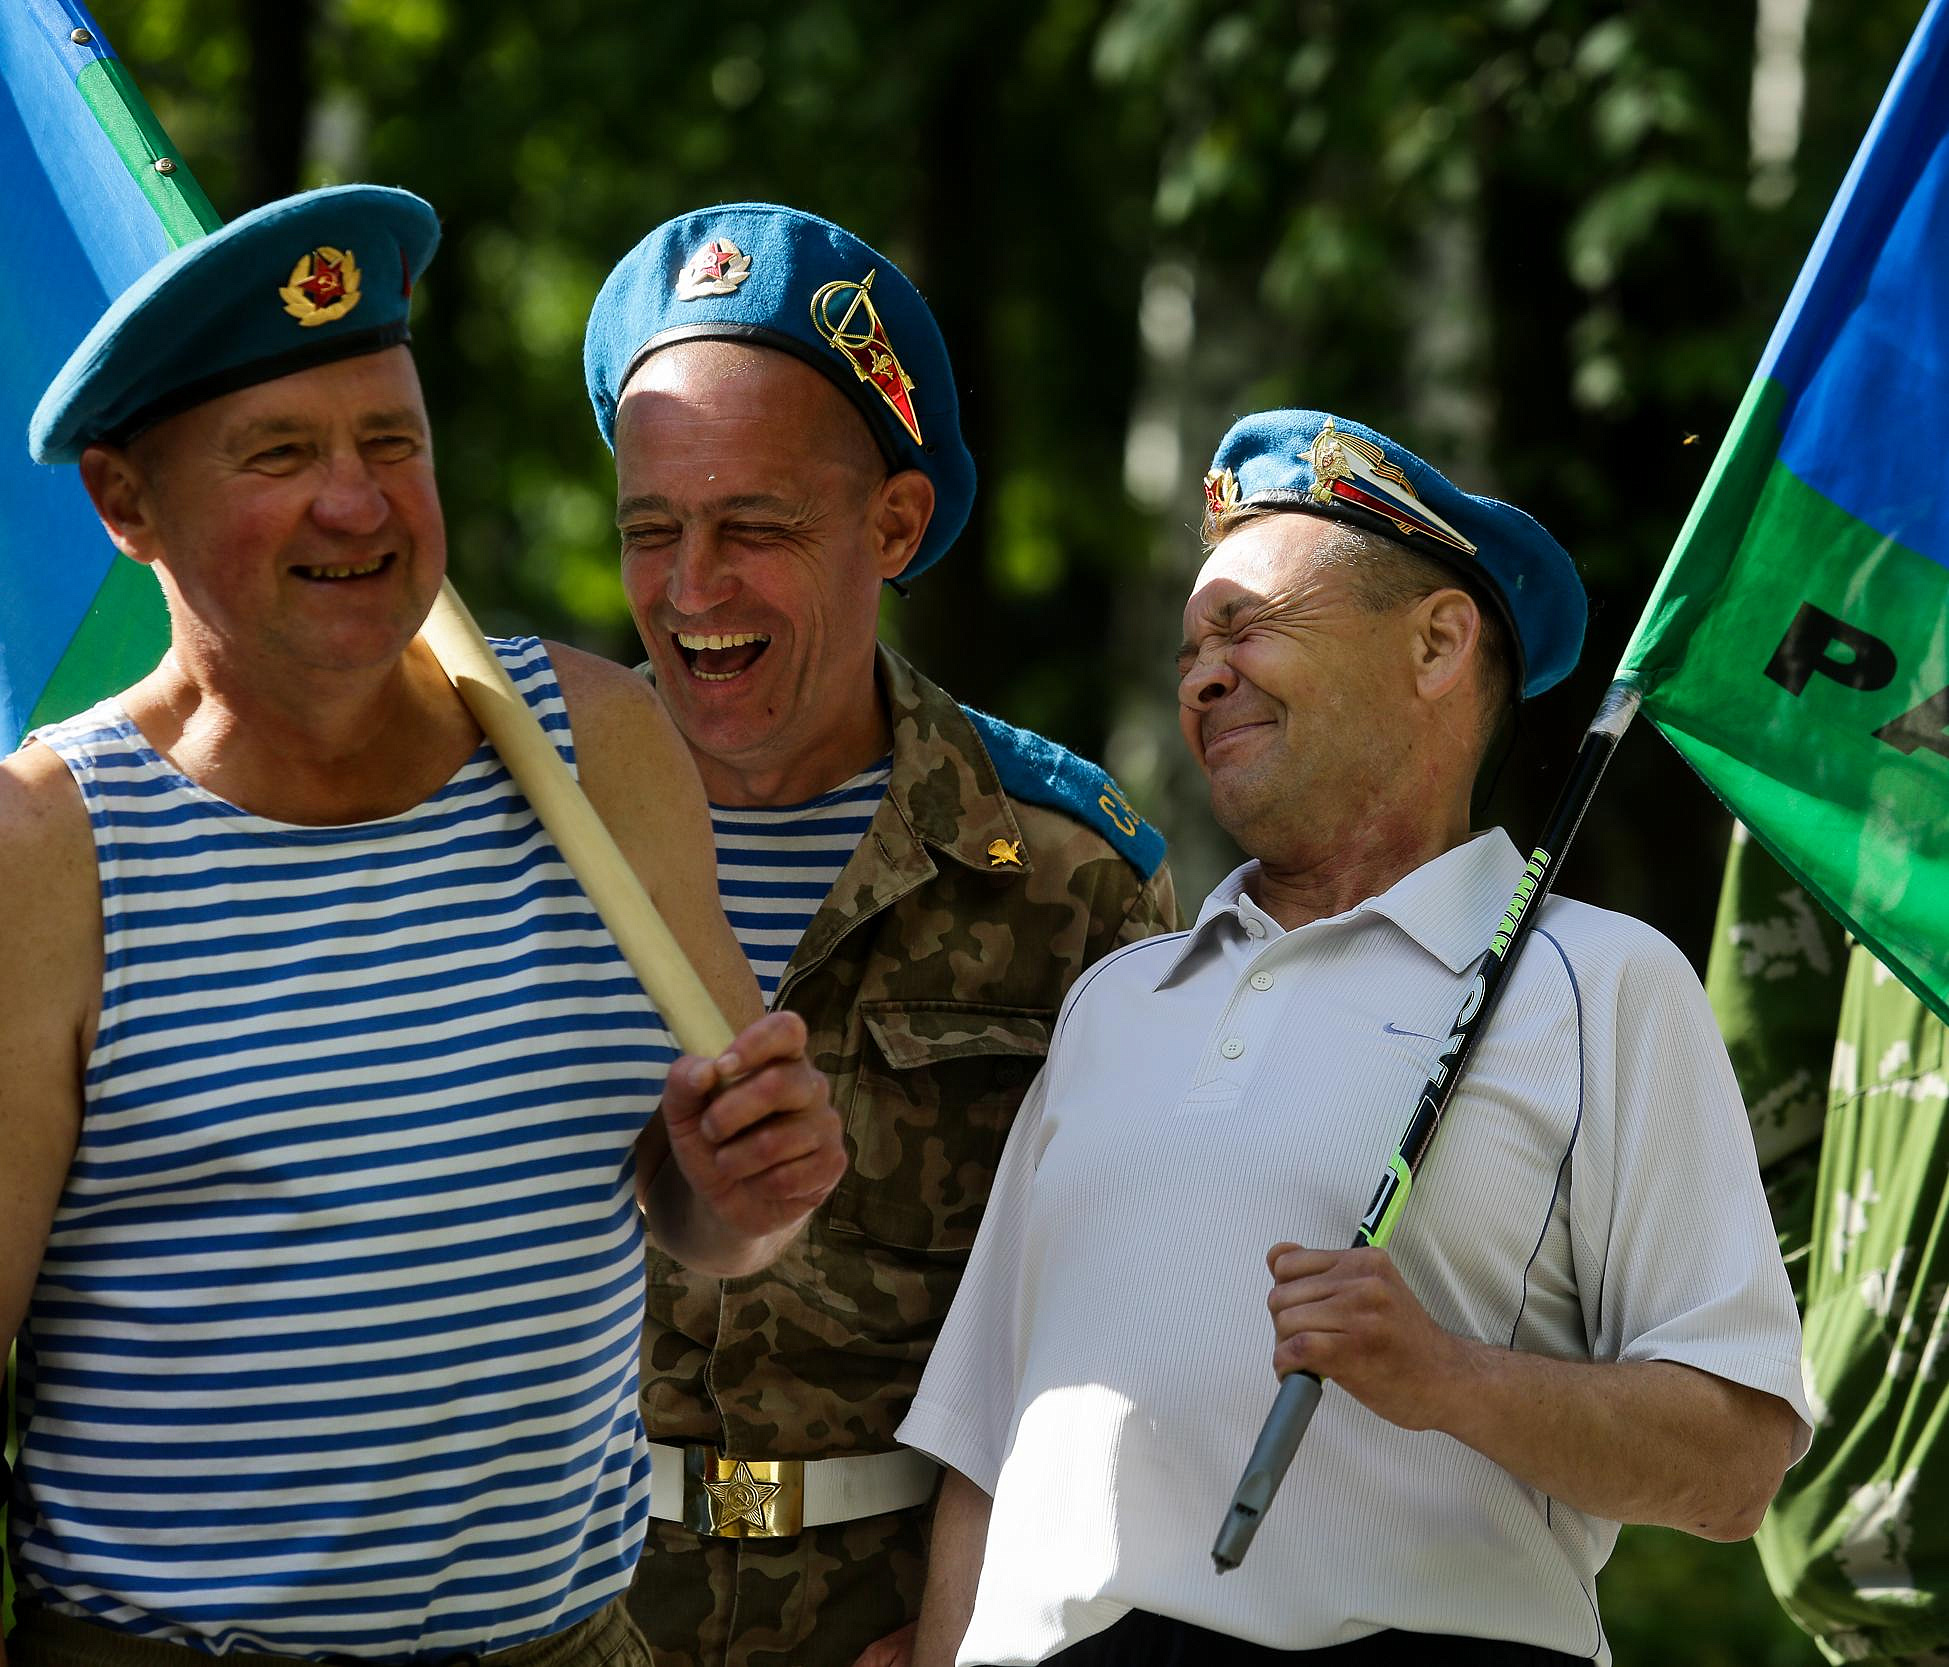 Десантники в тельняшках скромно отмечают День ВДВ в Новосибирске